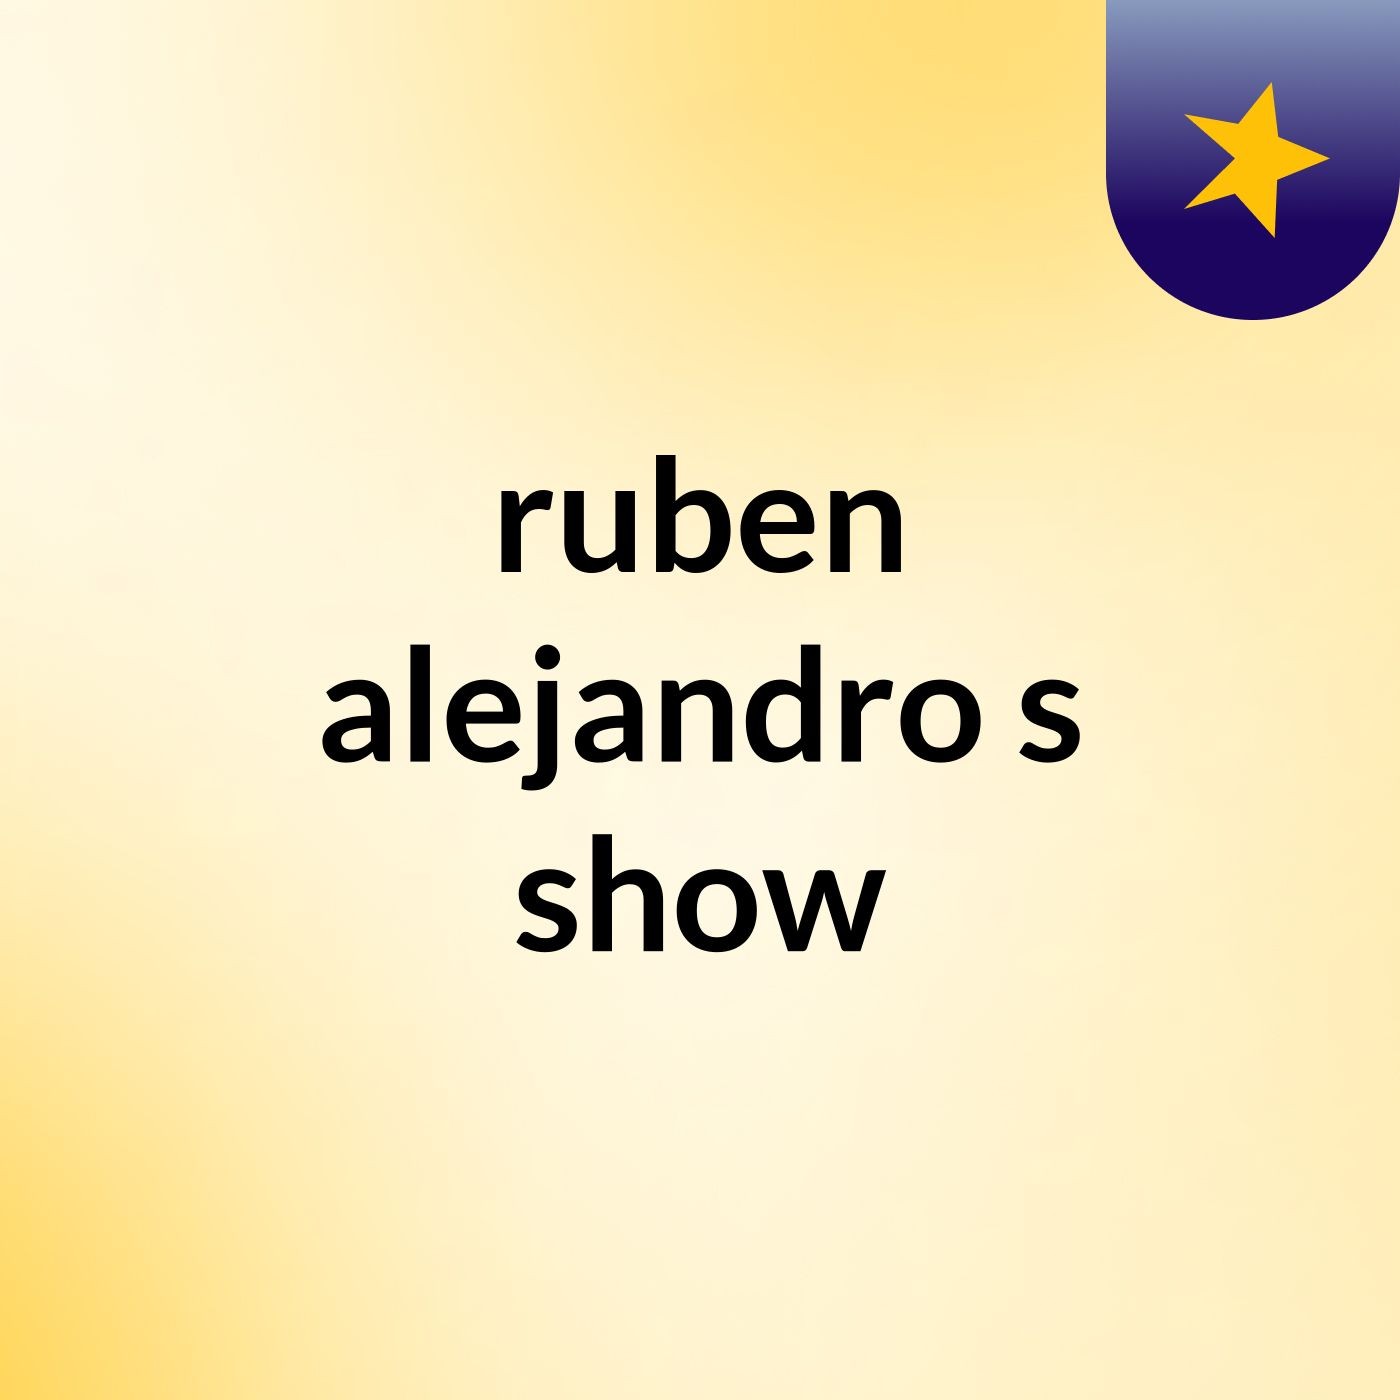 ruben alejandro's show